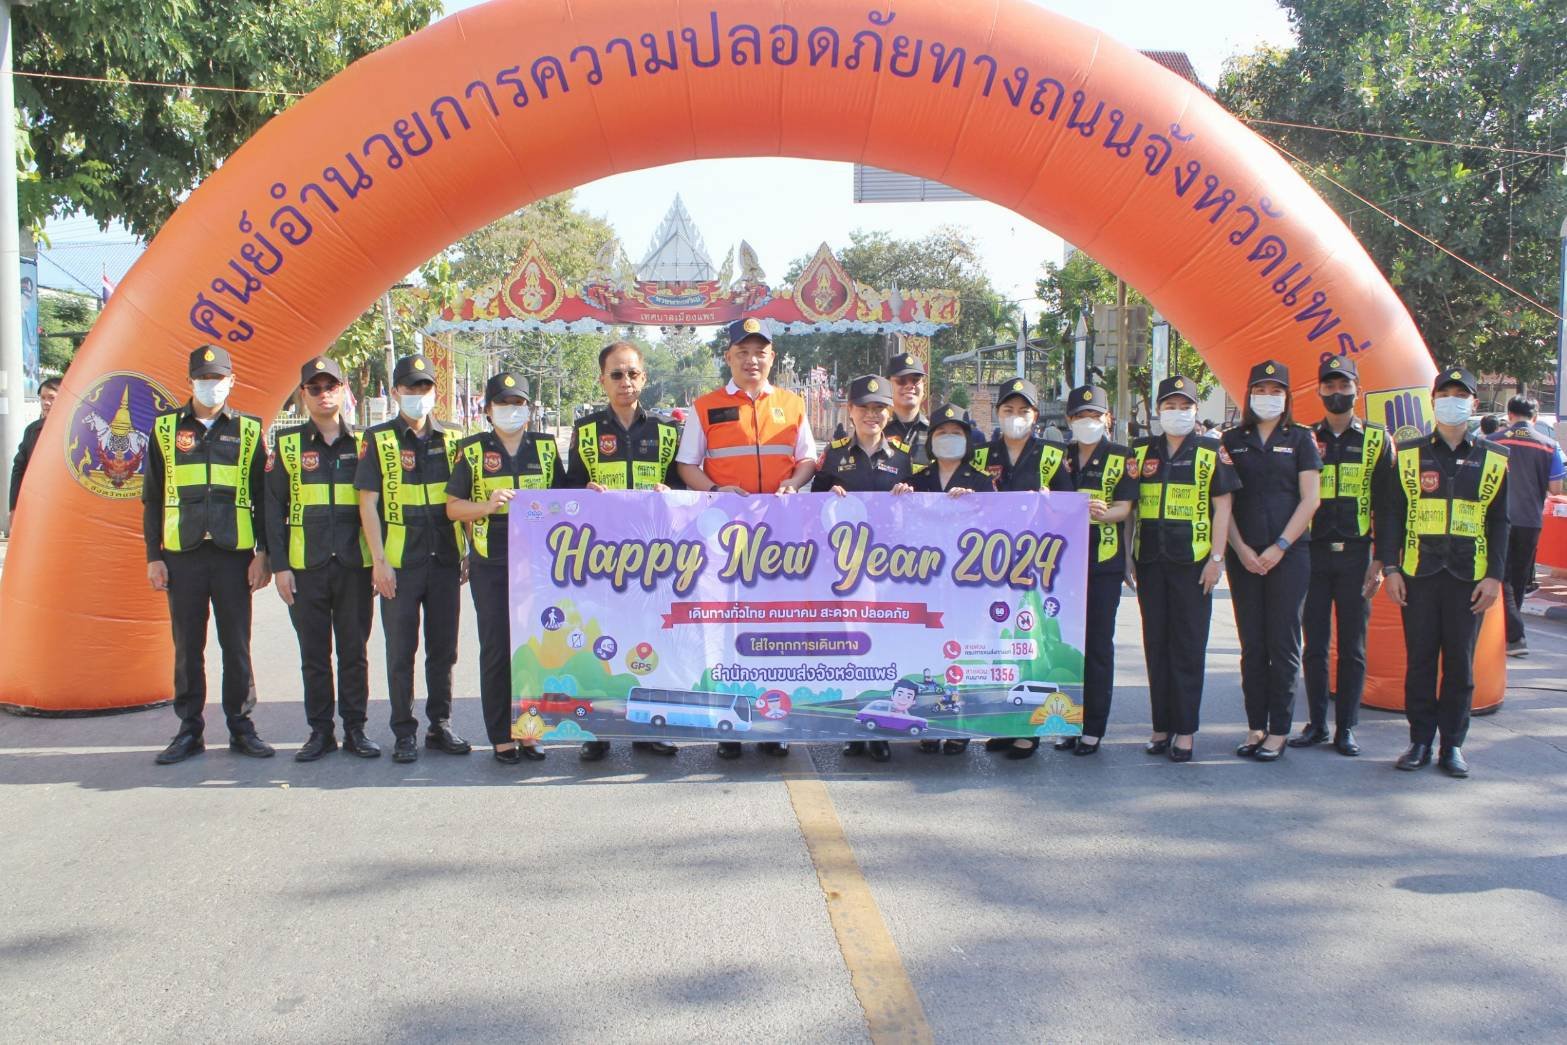 จังหวัดแพร่ เปิดศูนย์ปฏิบัติการป้องกันและลดอุบัติเหตุทางถนน ช่วงเทศกาลปีใหม่ 2567 “ขับขี่ปลอดภัย เมืองไทยไร้อุบัติเหตุ”